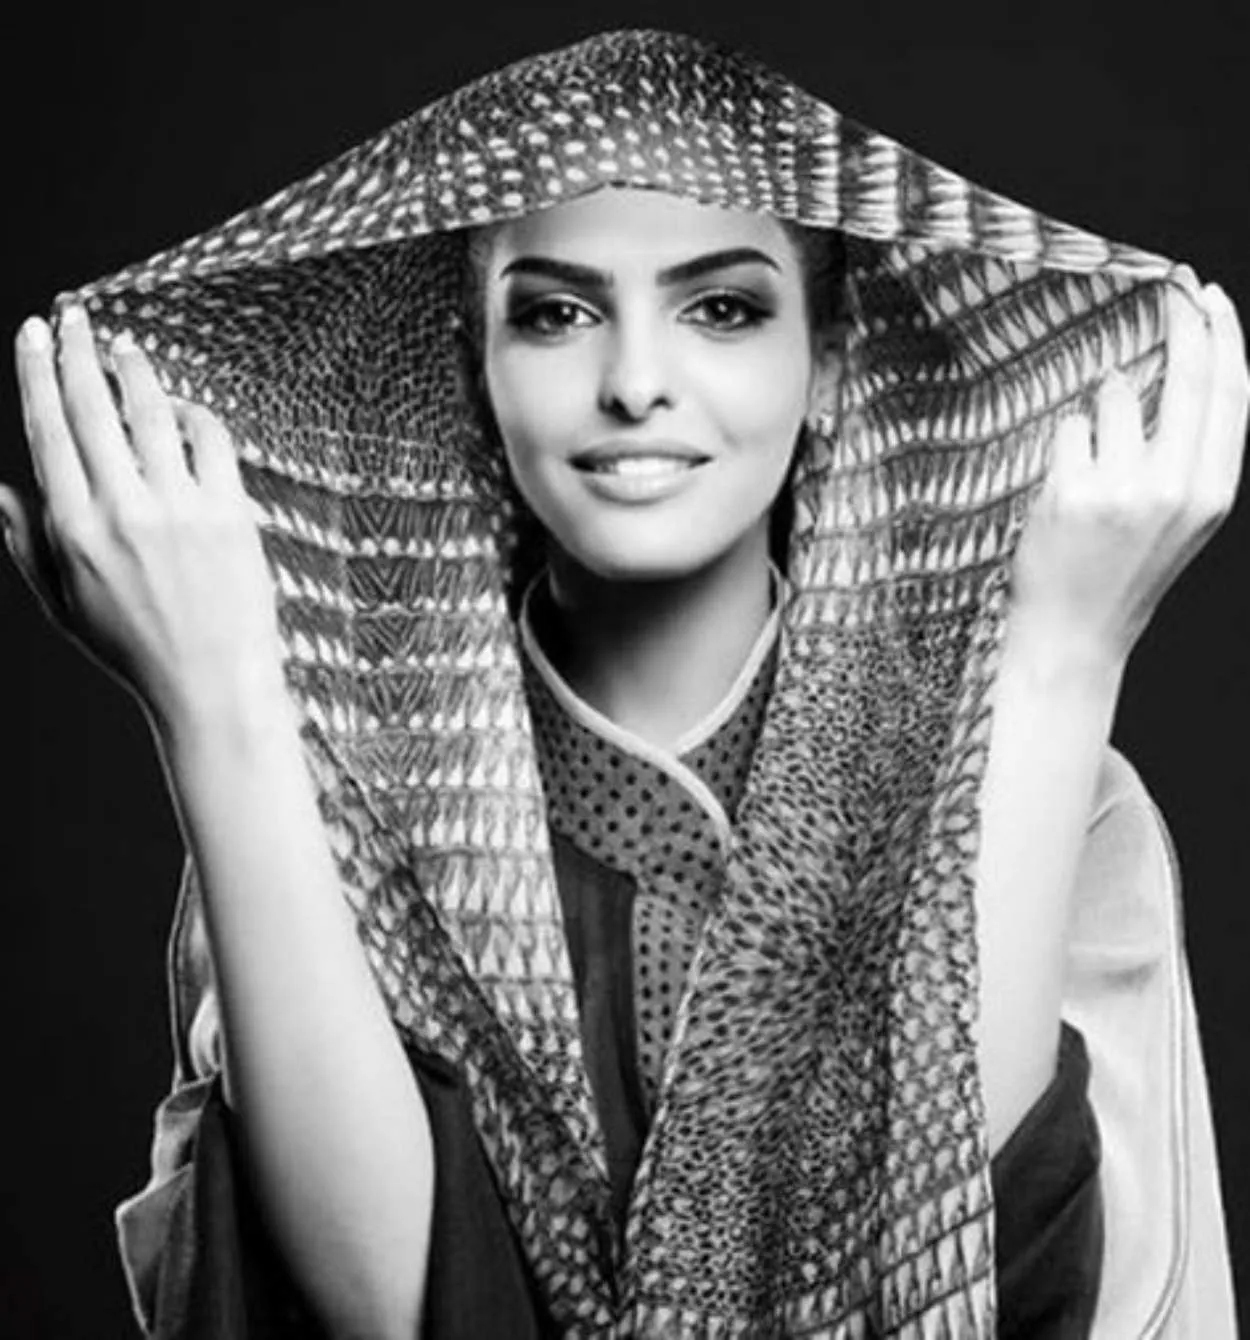 Buraidah (Arab Saudi) beautiful woman or selebgram